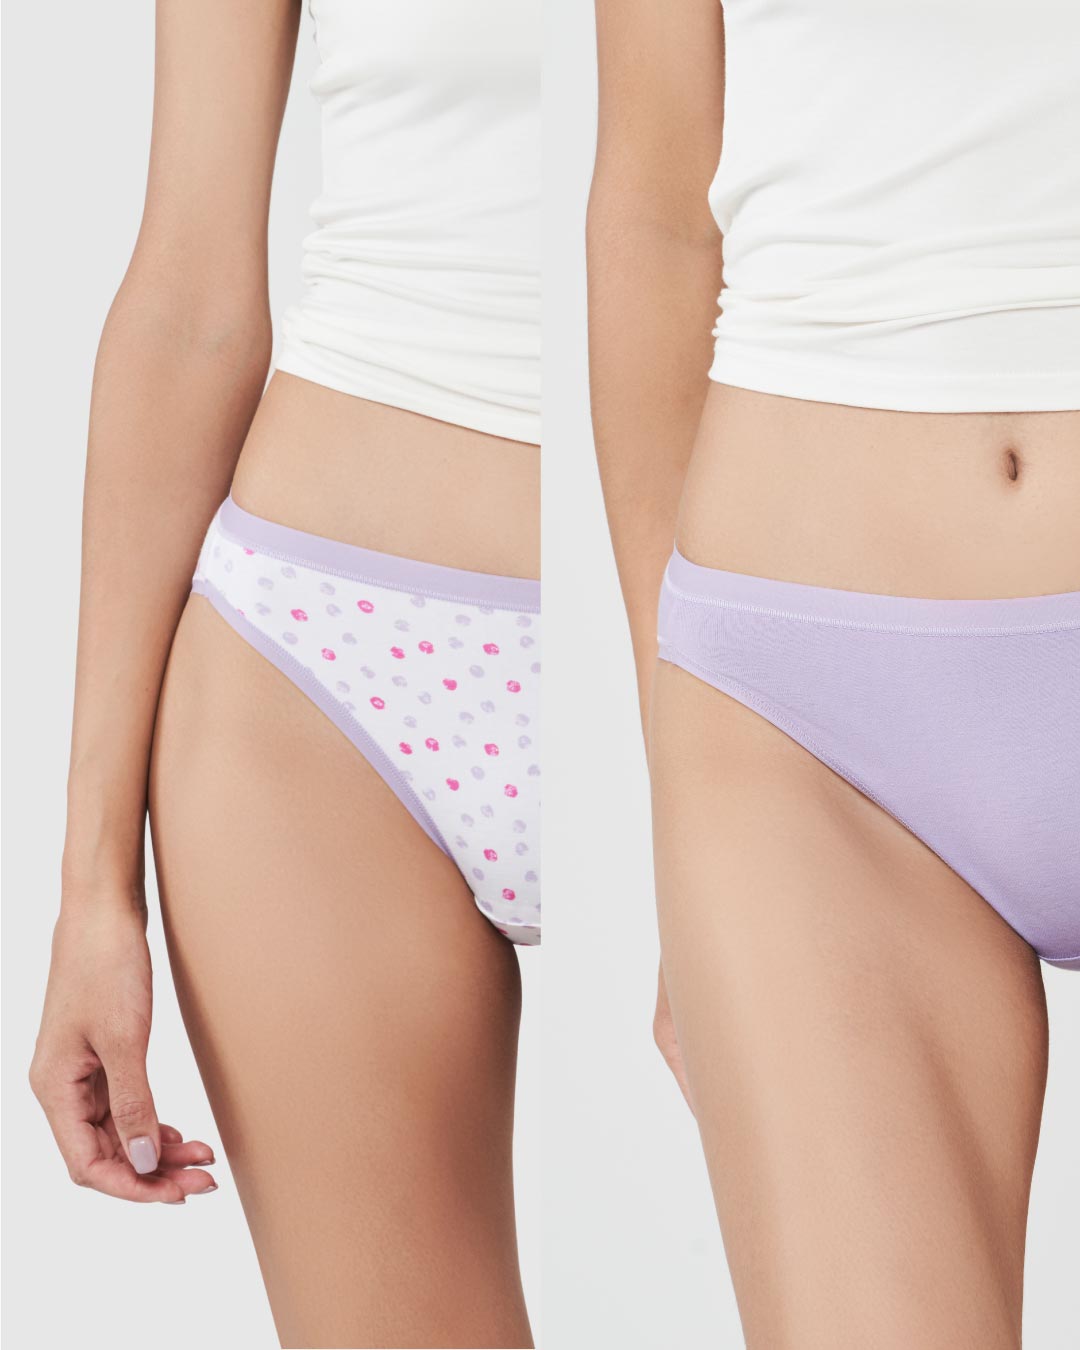 LPX Comfy Women's Cotton Panty Set,Girls ladies panty bikini